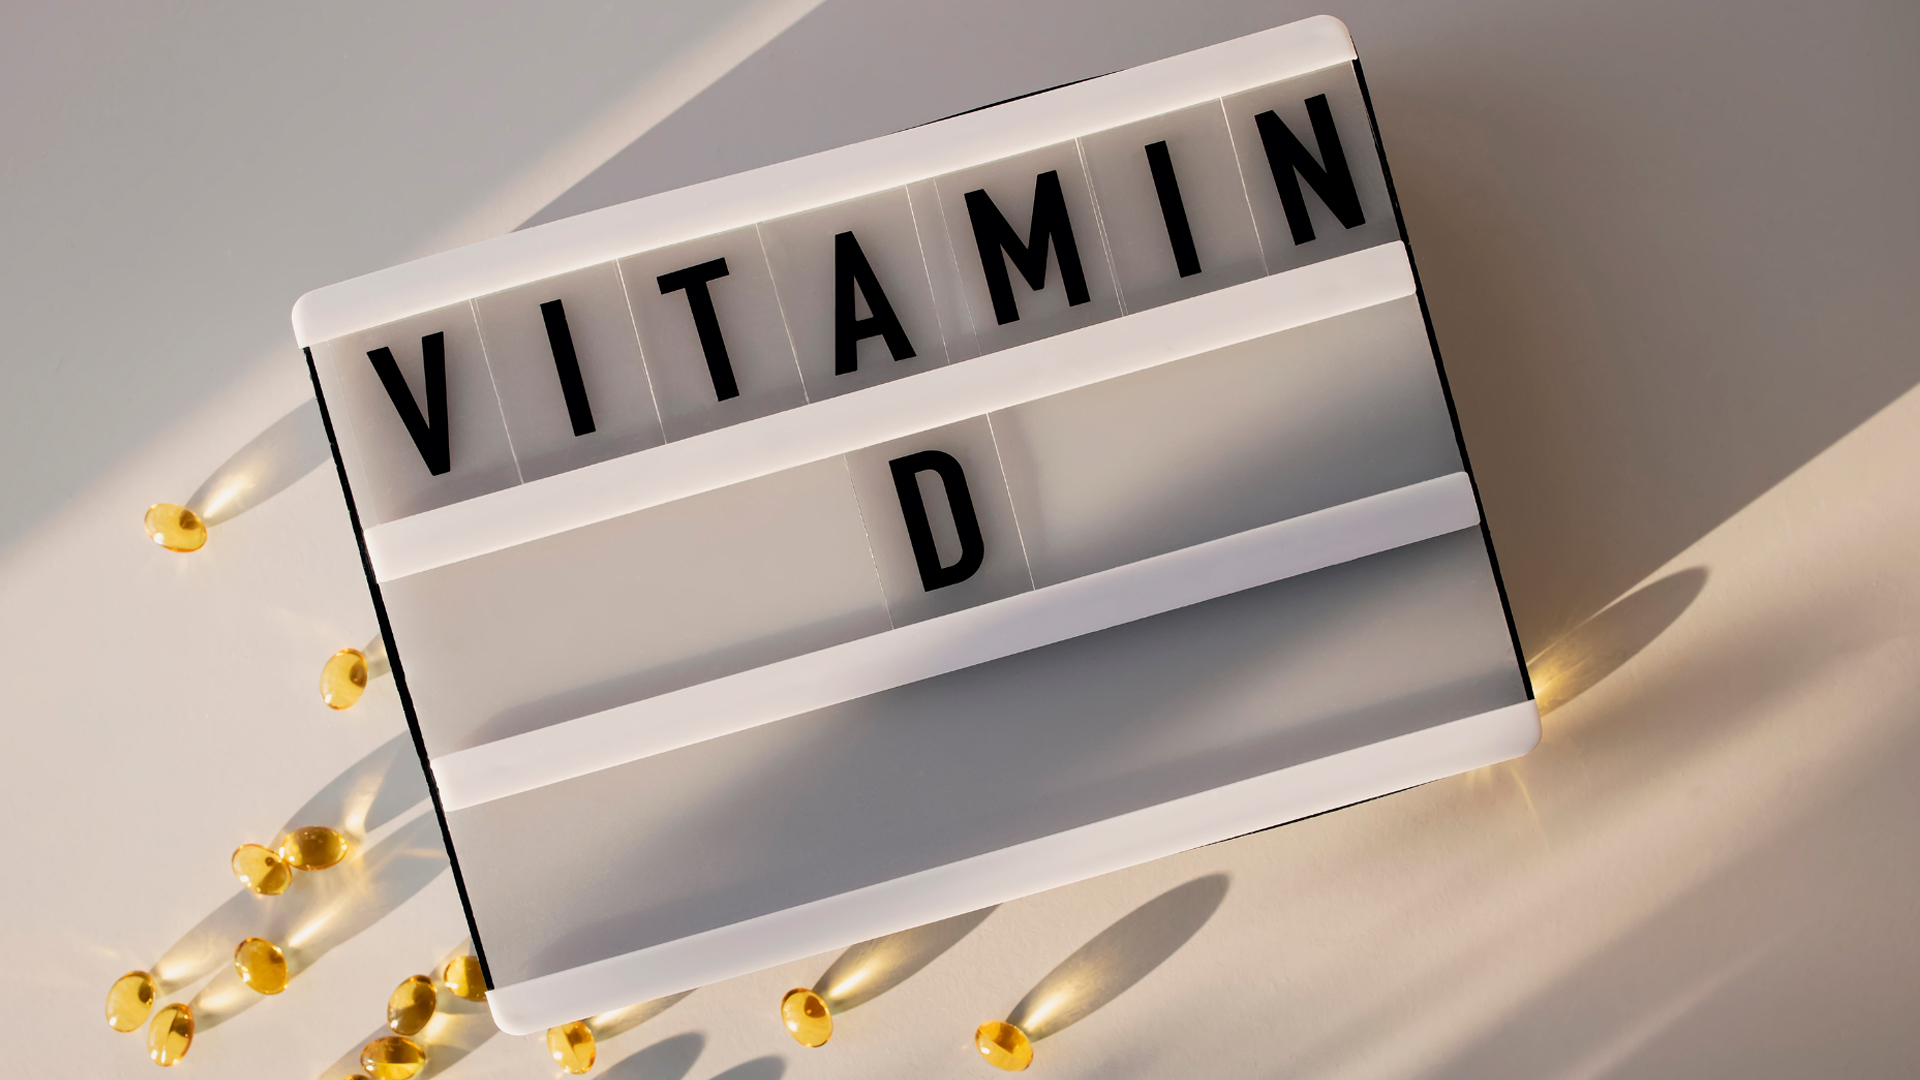 Анализ на витамин D